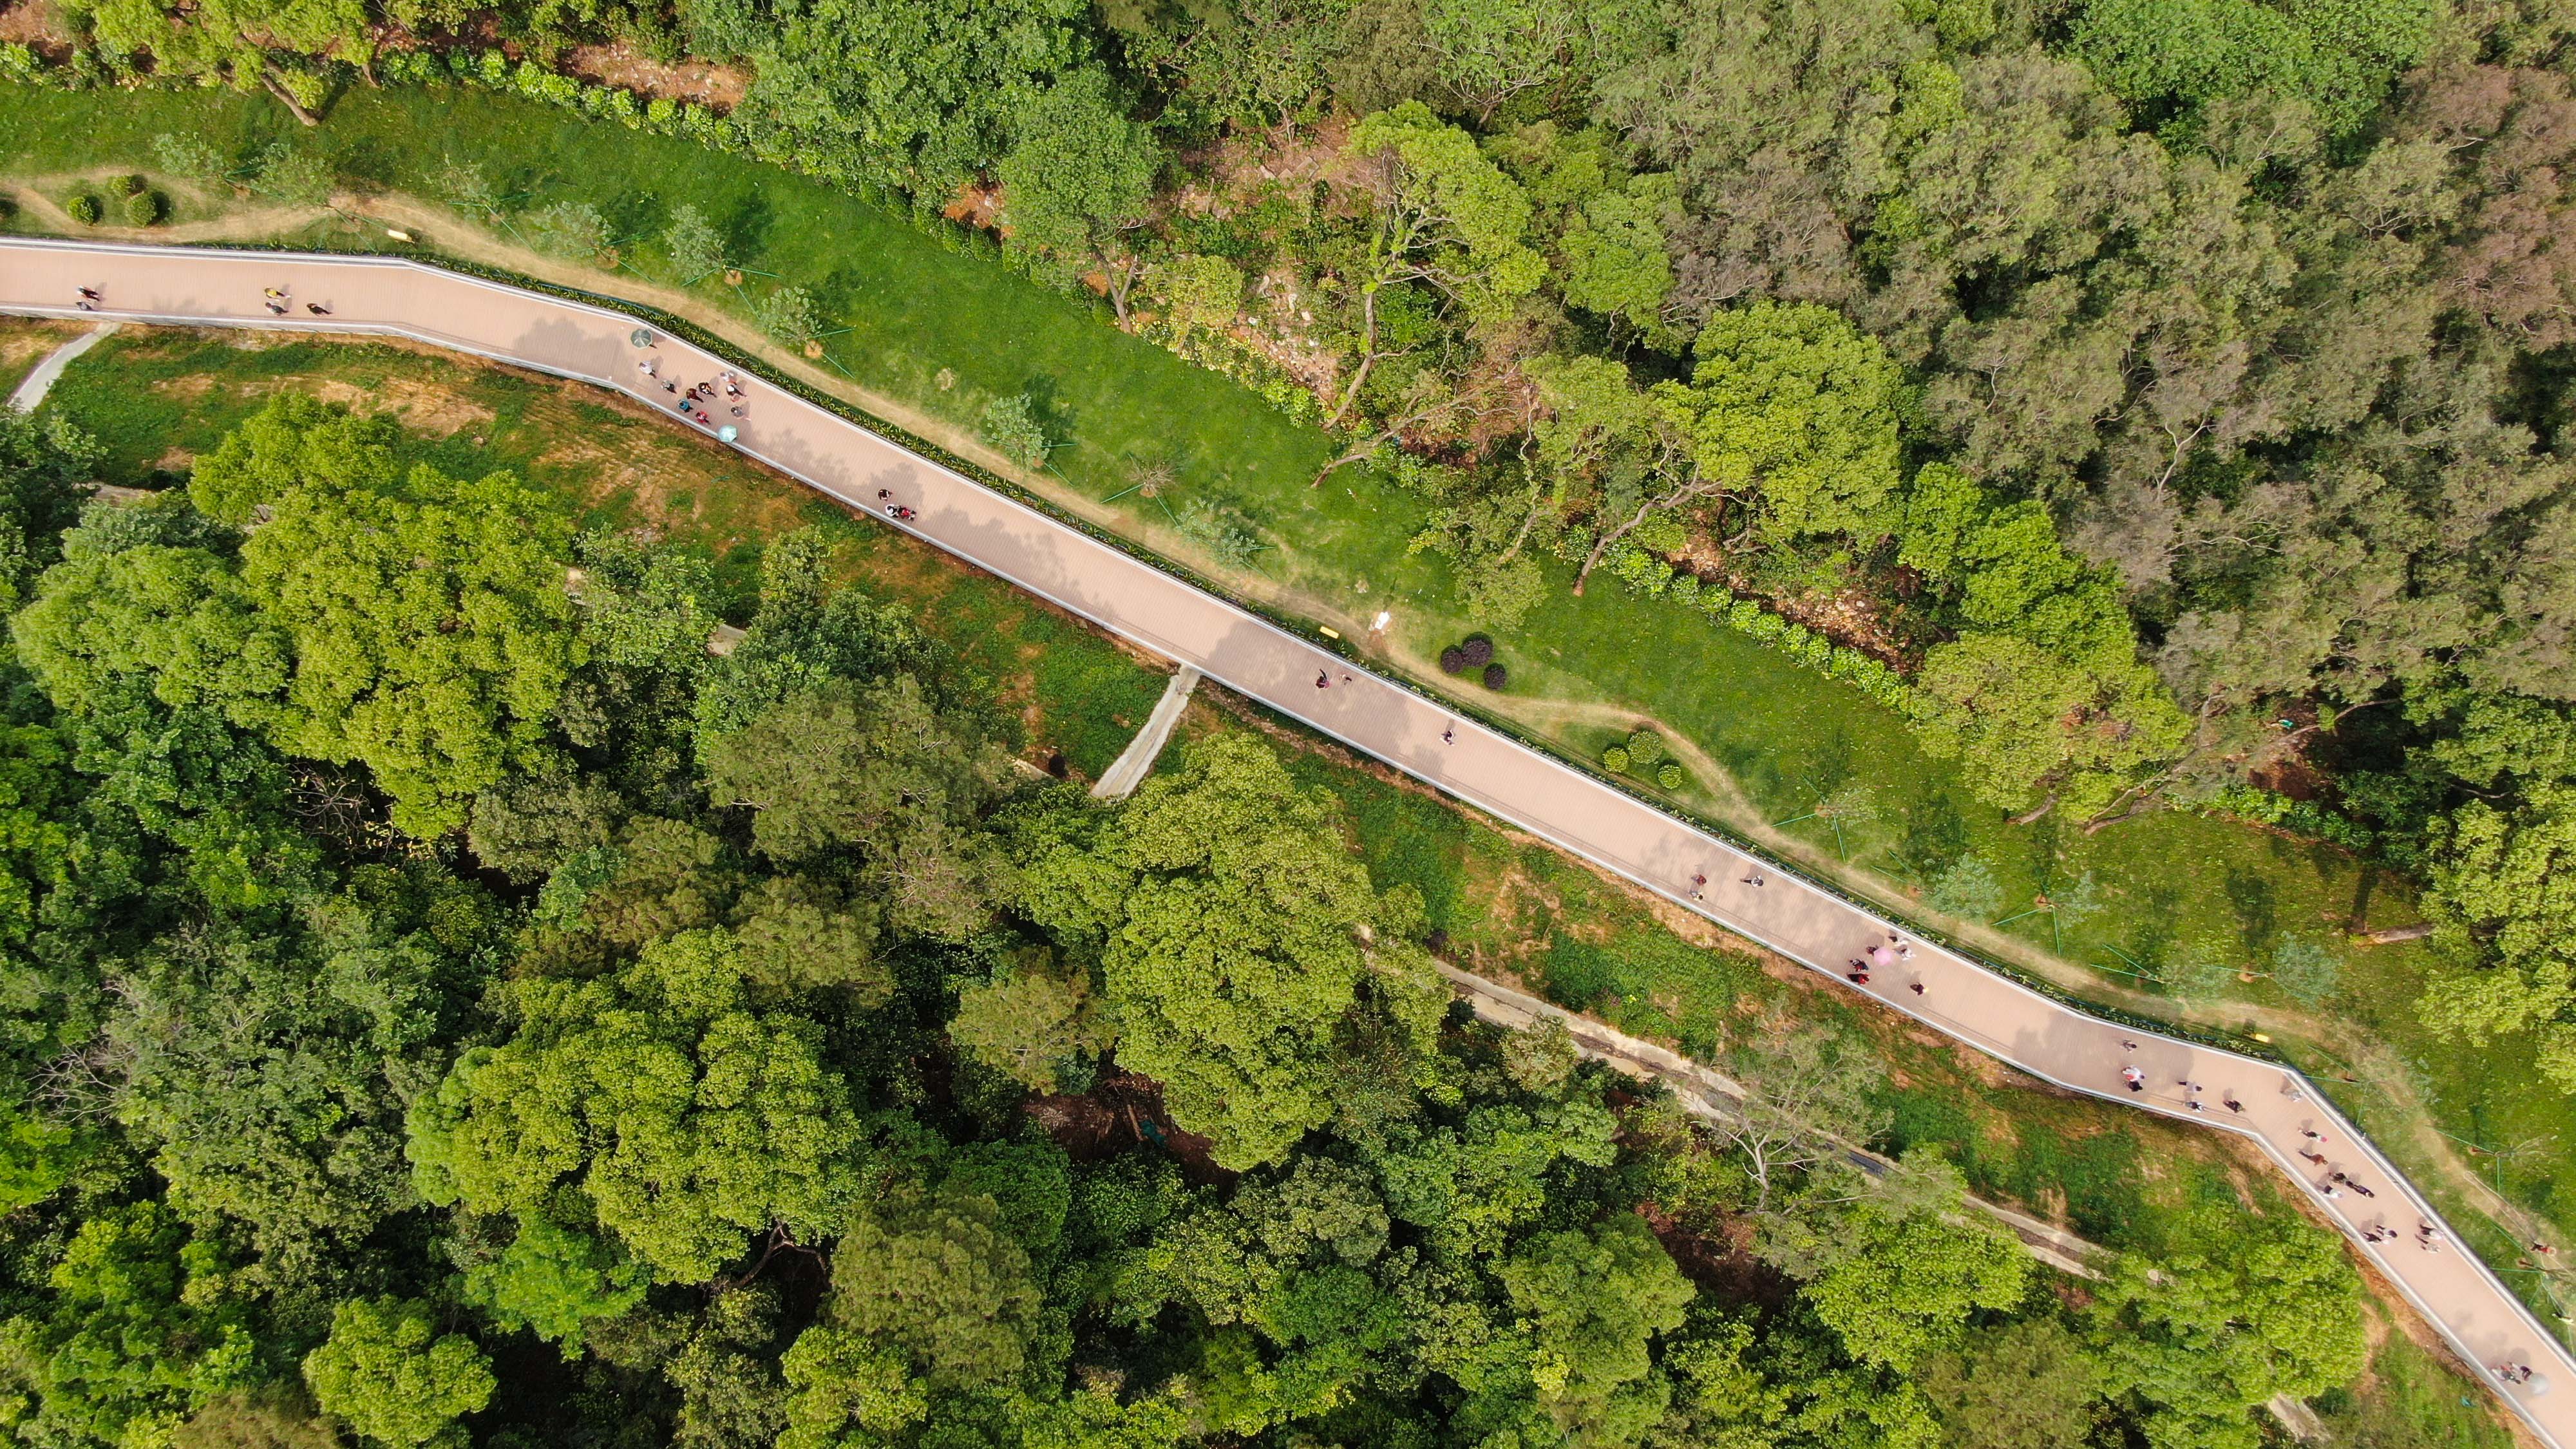 这是4月17日拍摄的广州空中步道下塘西天桥附近景观(无人机照片)